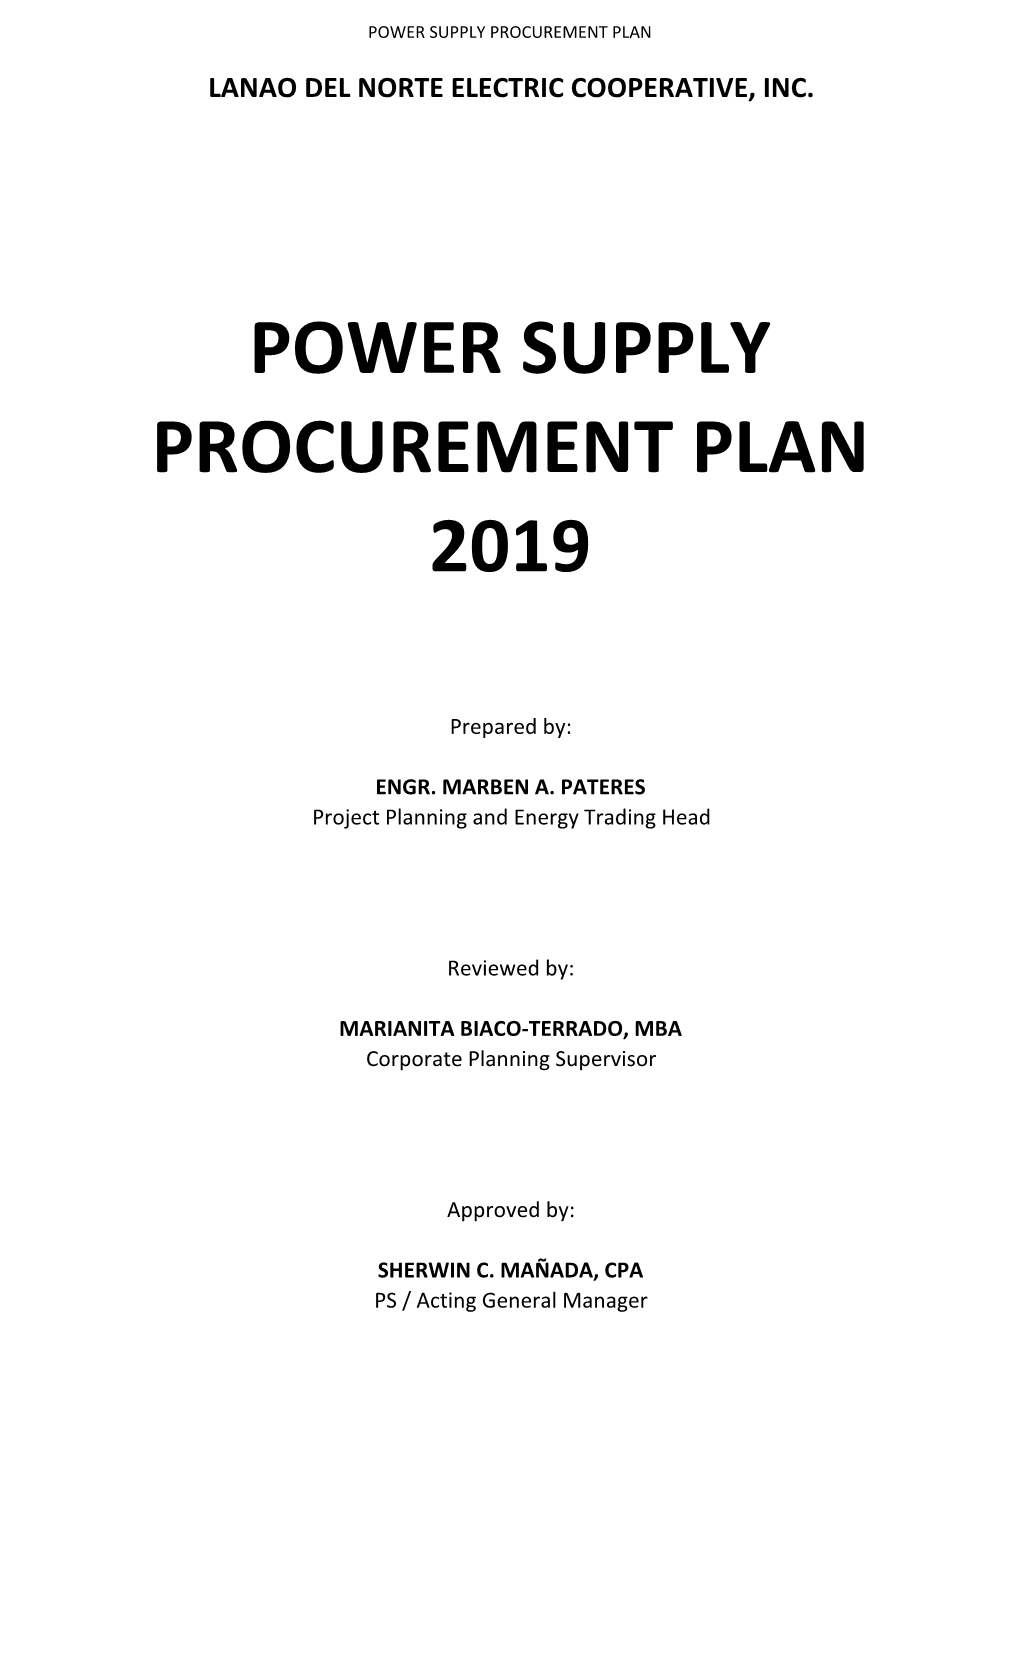 Power Supply Procurement Plan 2019